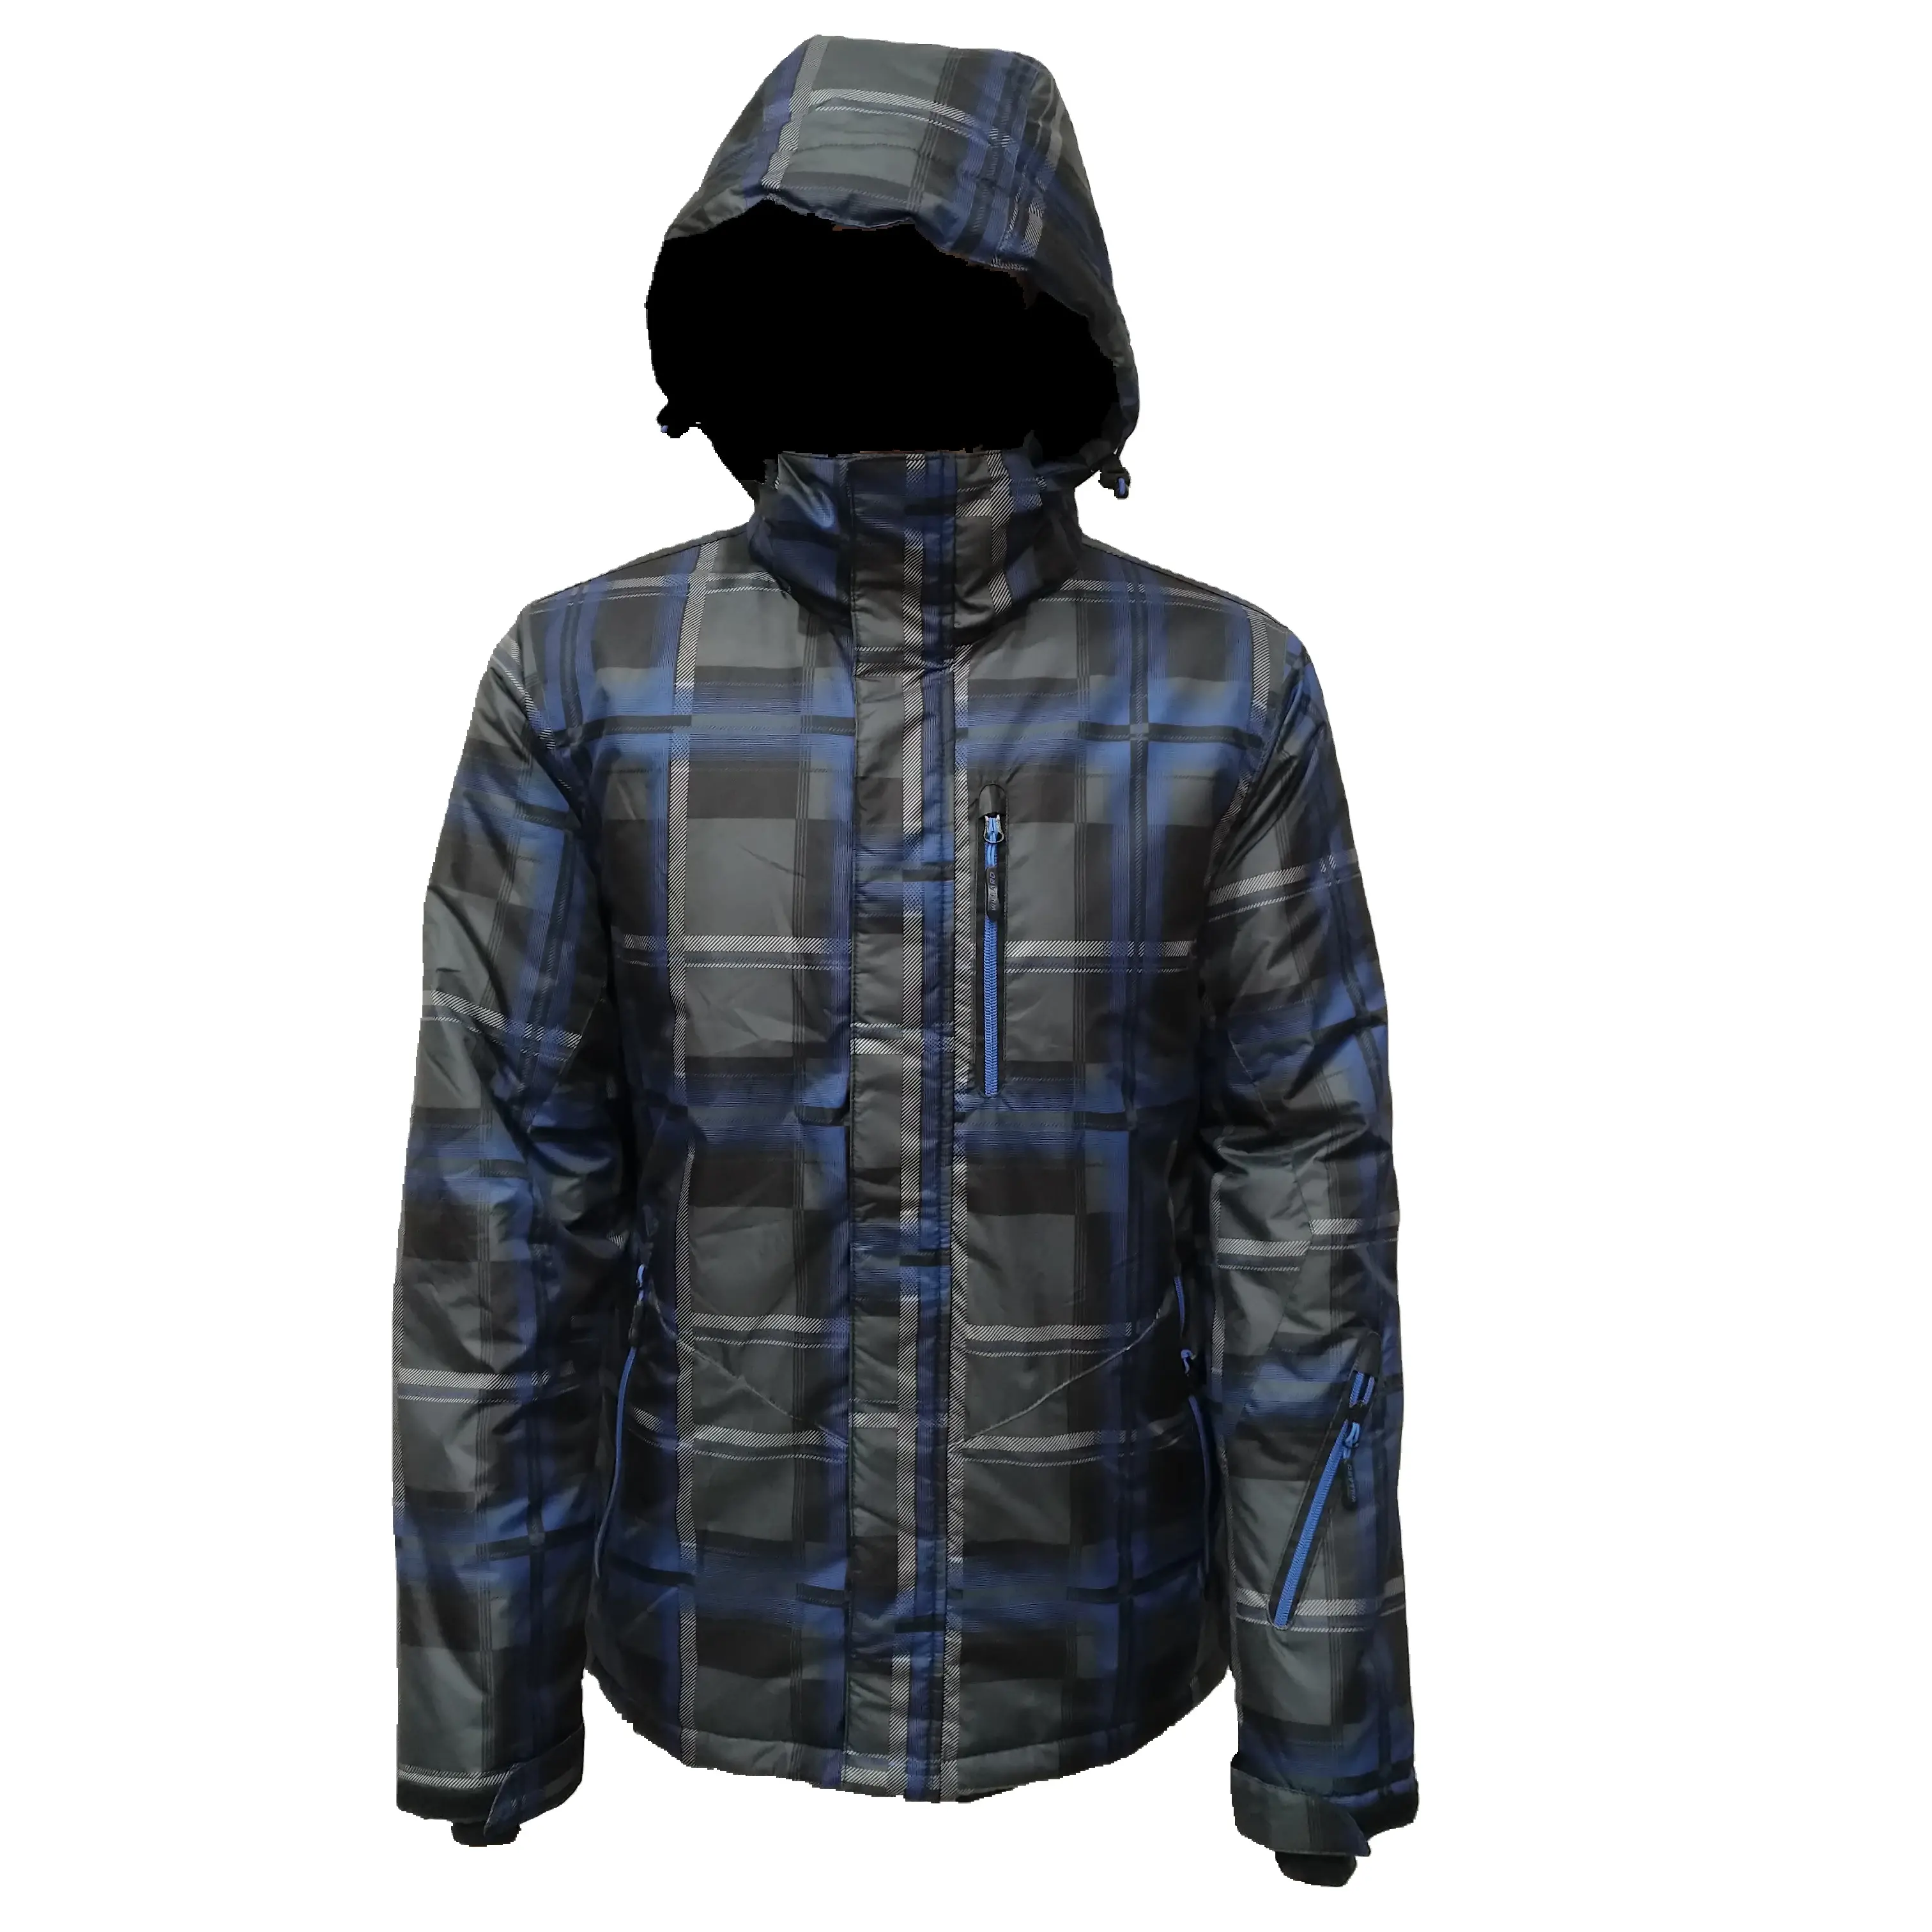 Caliente-mantener ladrillo acolchado impermeable con aislamiento térmico híbrido chaqueta abrigo de invierno ropa de invierno hielo adolescente hombre chaqueta acolchada